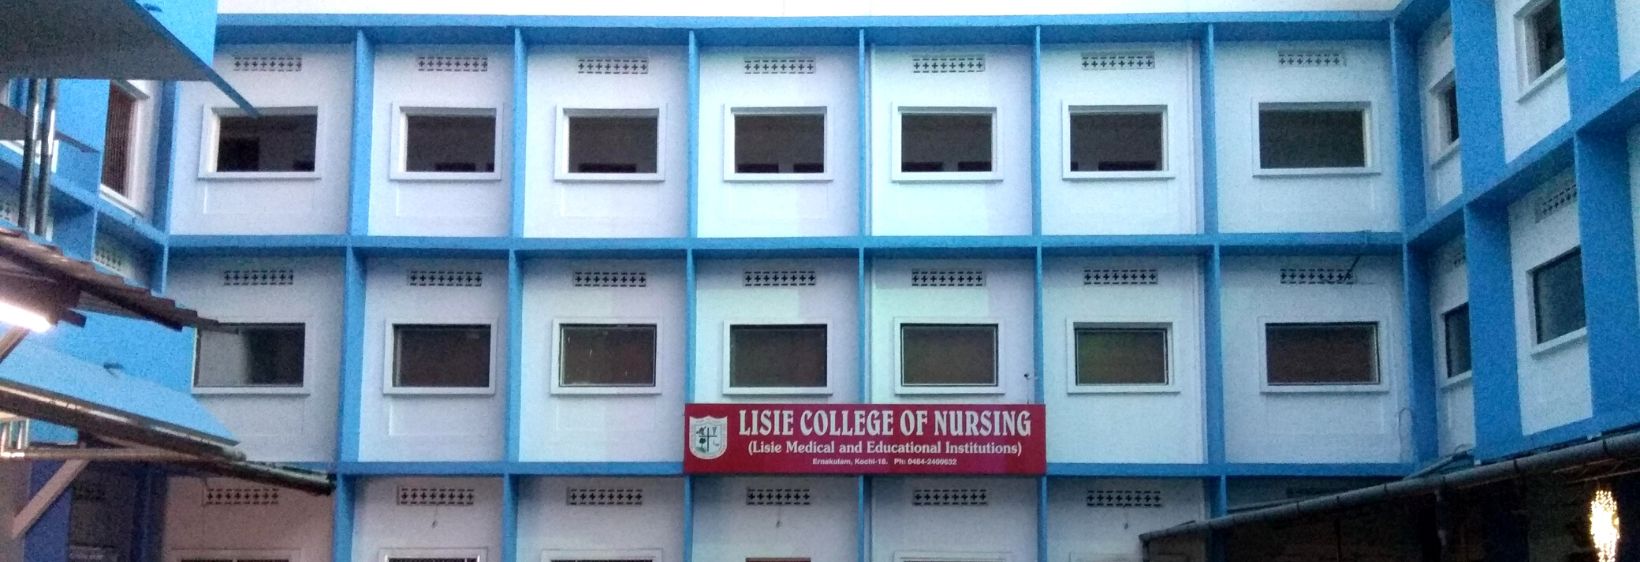 Lisie College of Nursing - Ernakulam